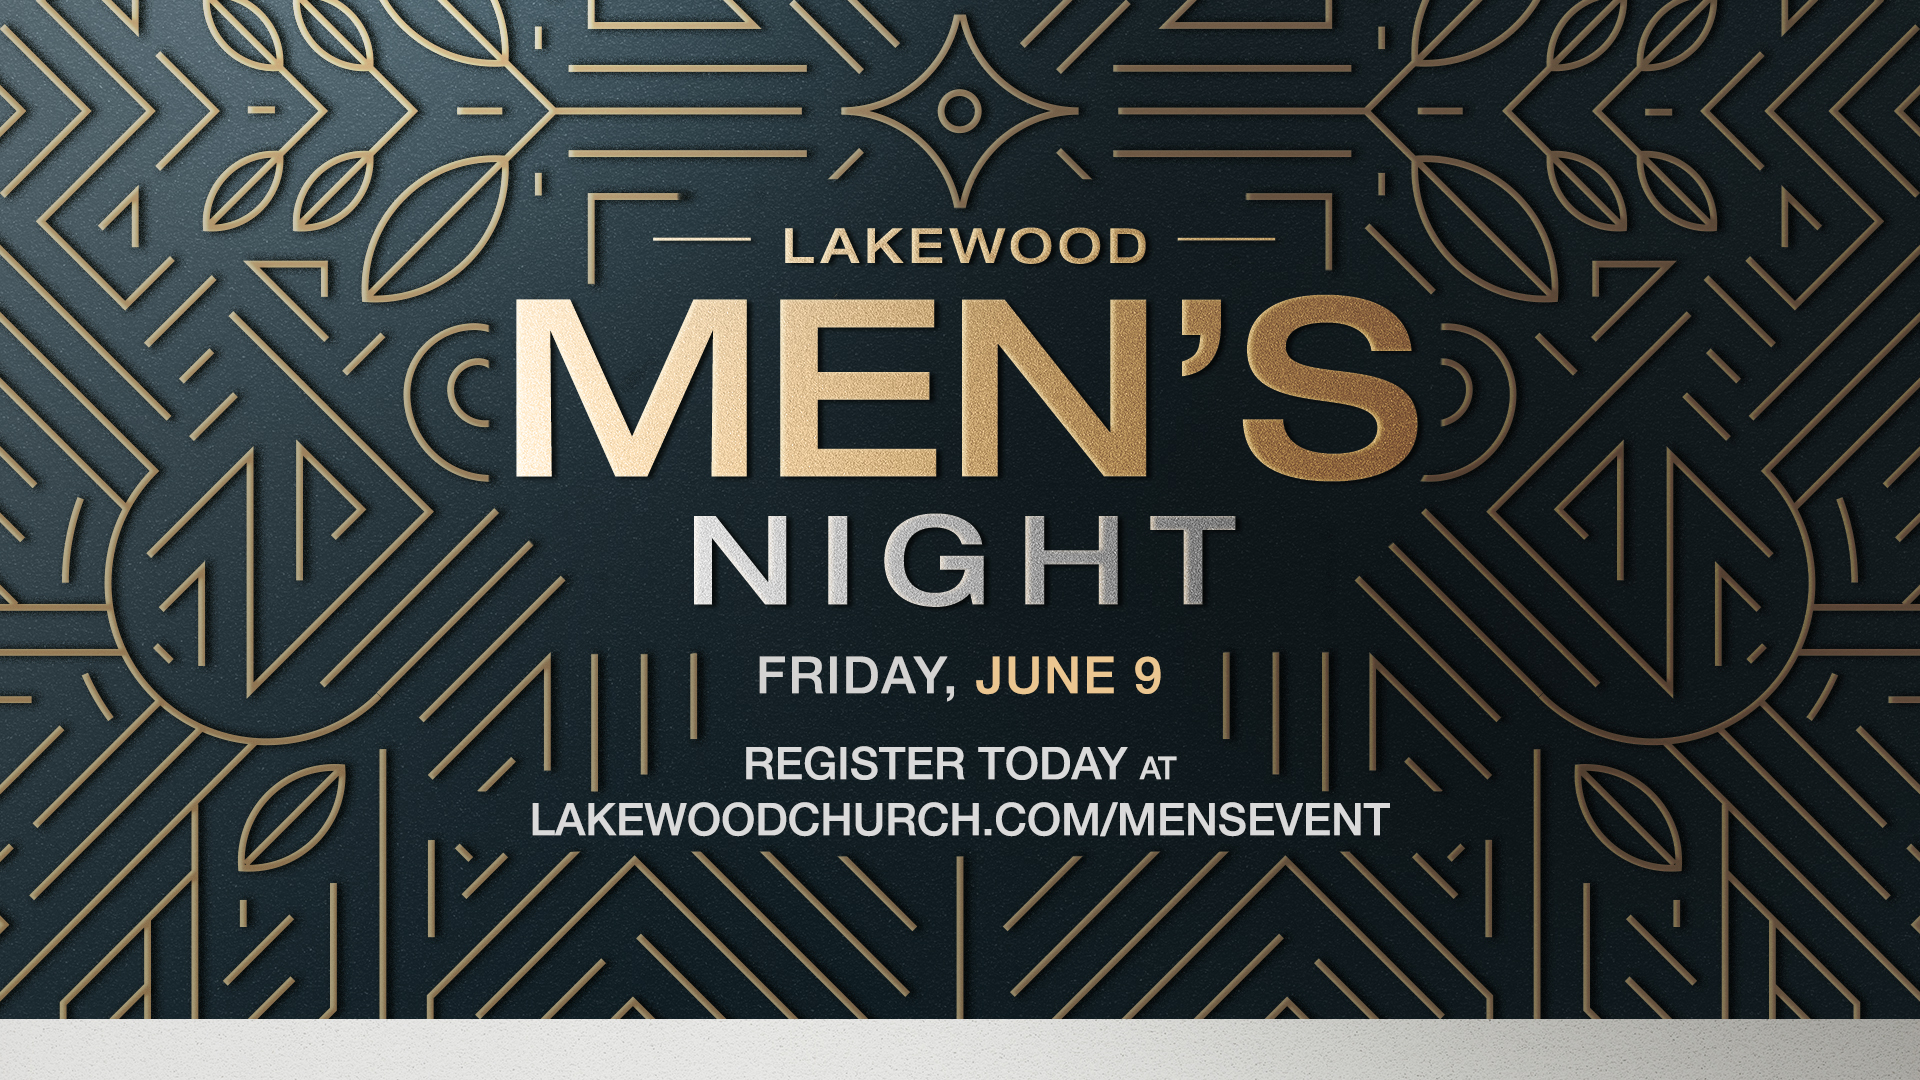 Lakewood Men's Night